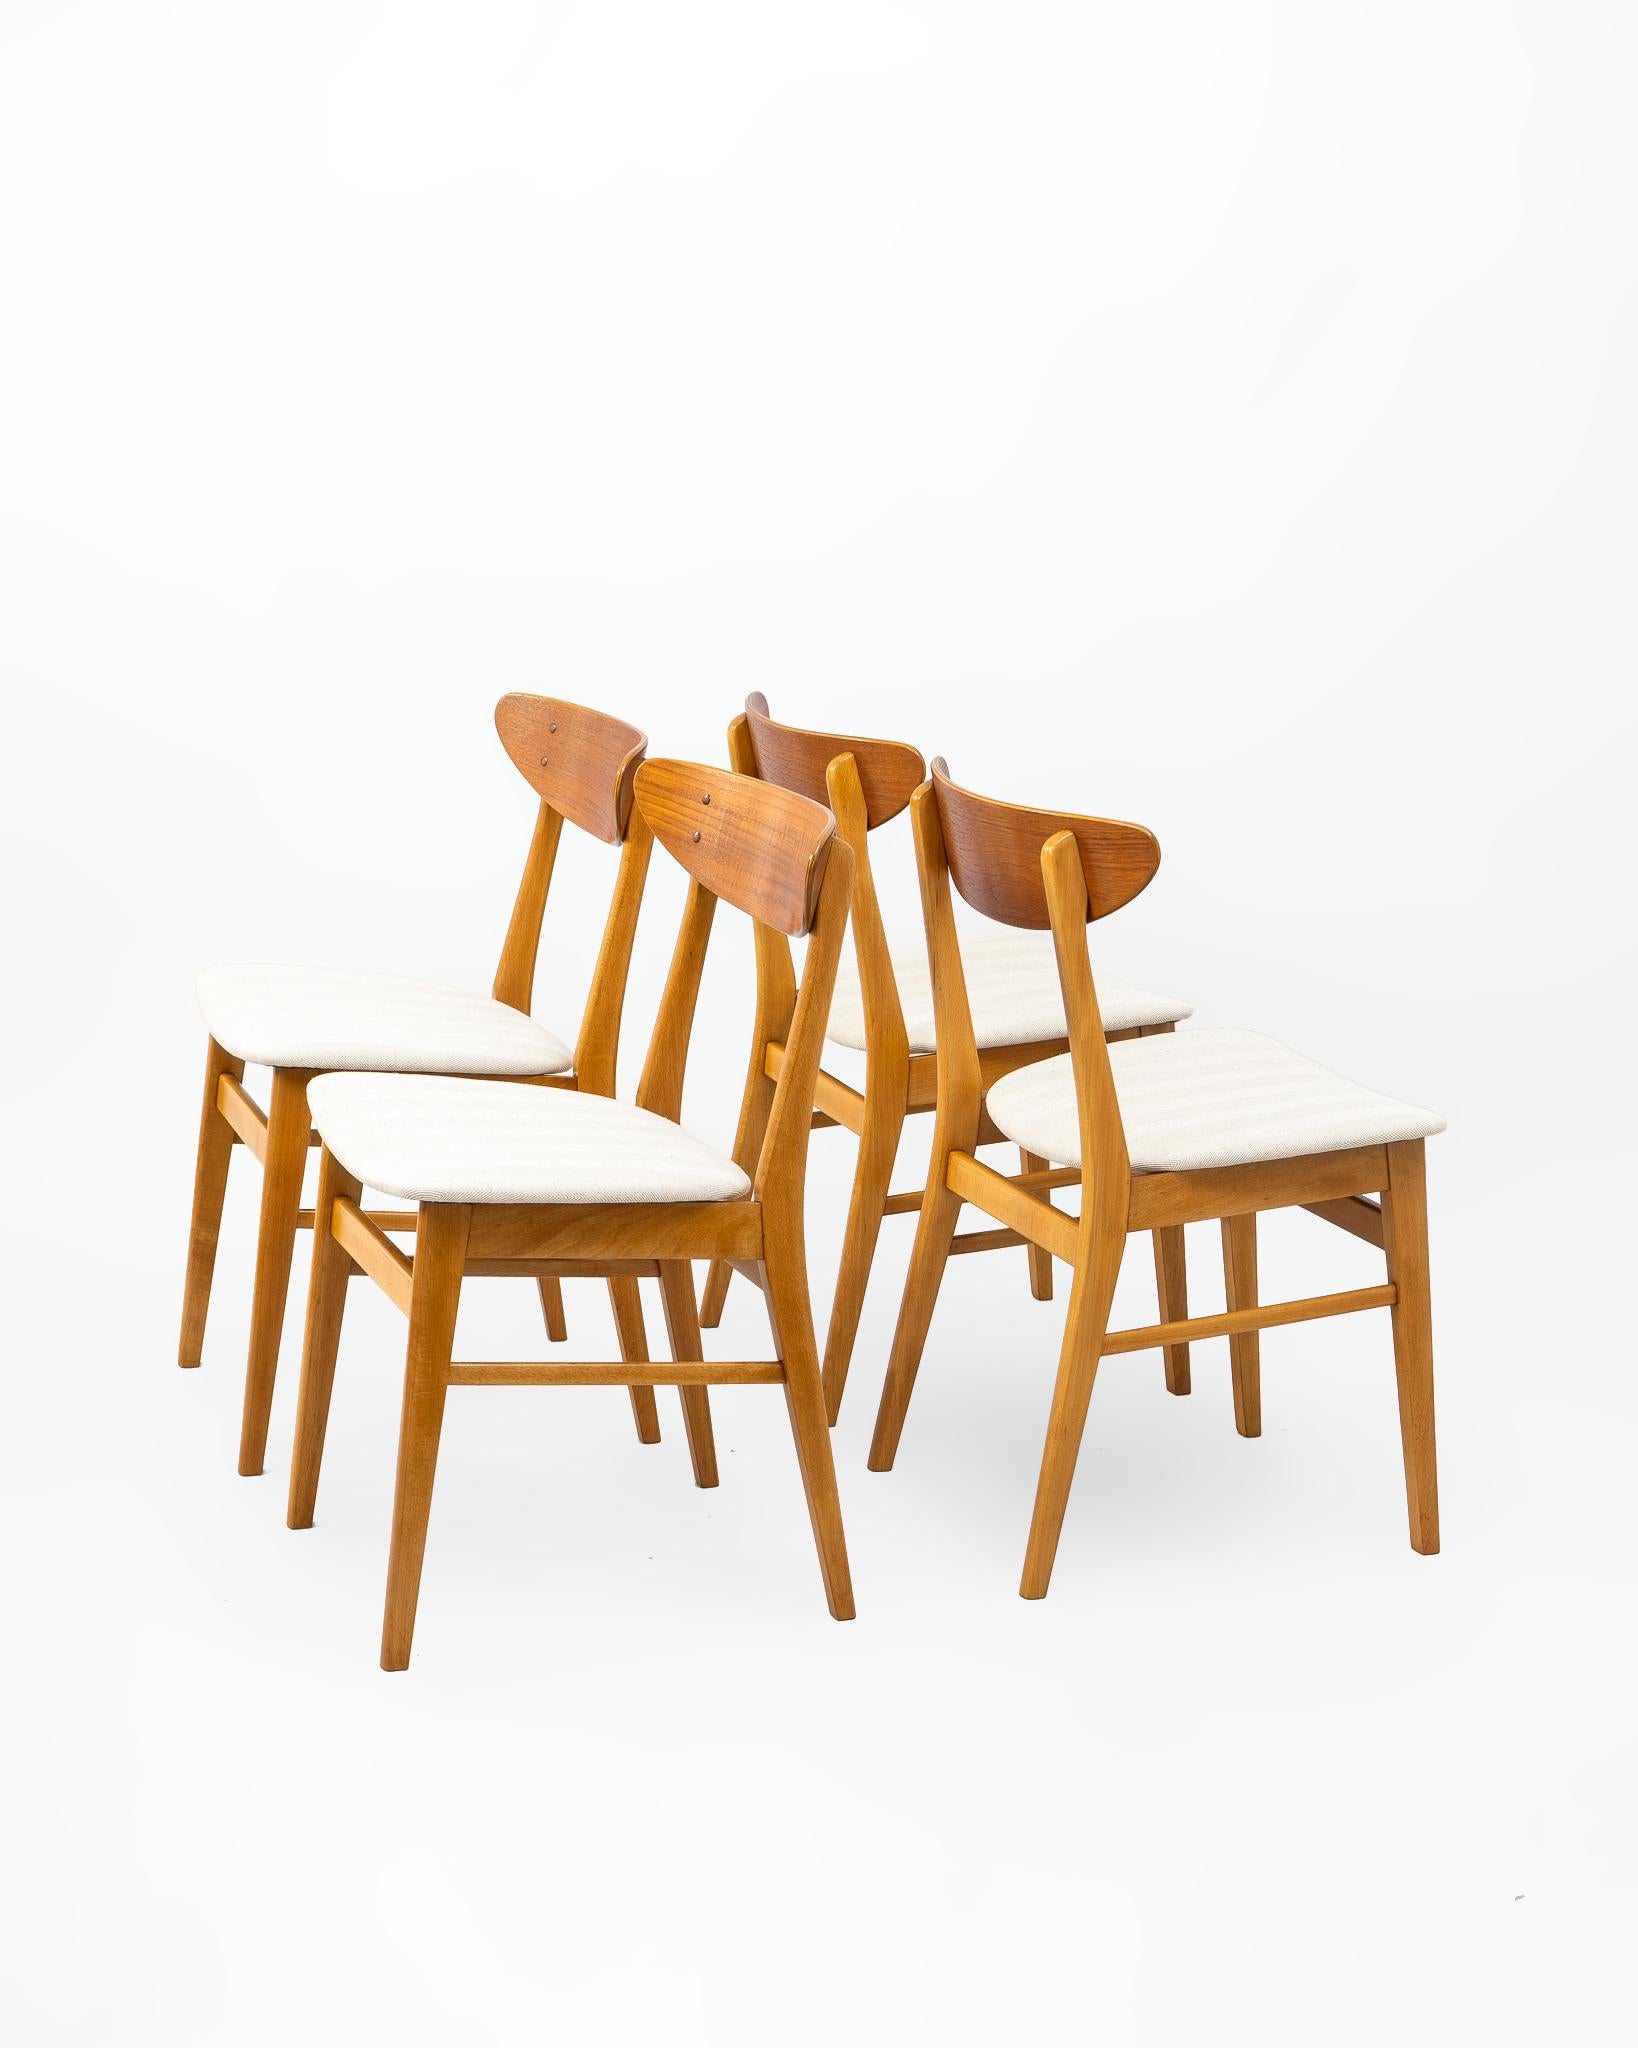 Conjunto de cuatro sillas fabricadas por la firma danesa Farstrup Stolefabrik en la década de los 1960’s. Estructura en madera de haya maciza con un elegante y ergonómico respaldo en forma de boomerang en chapa de teca. Diseño Mid Century que es ya